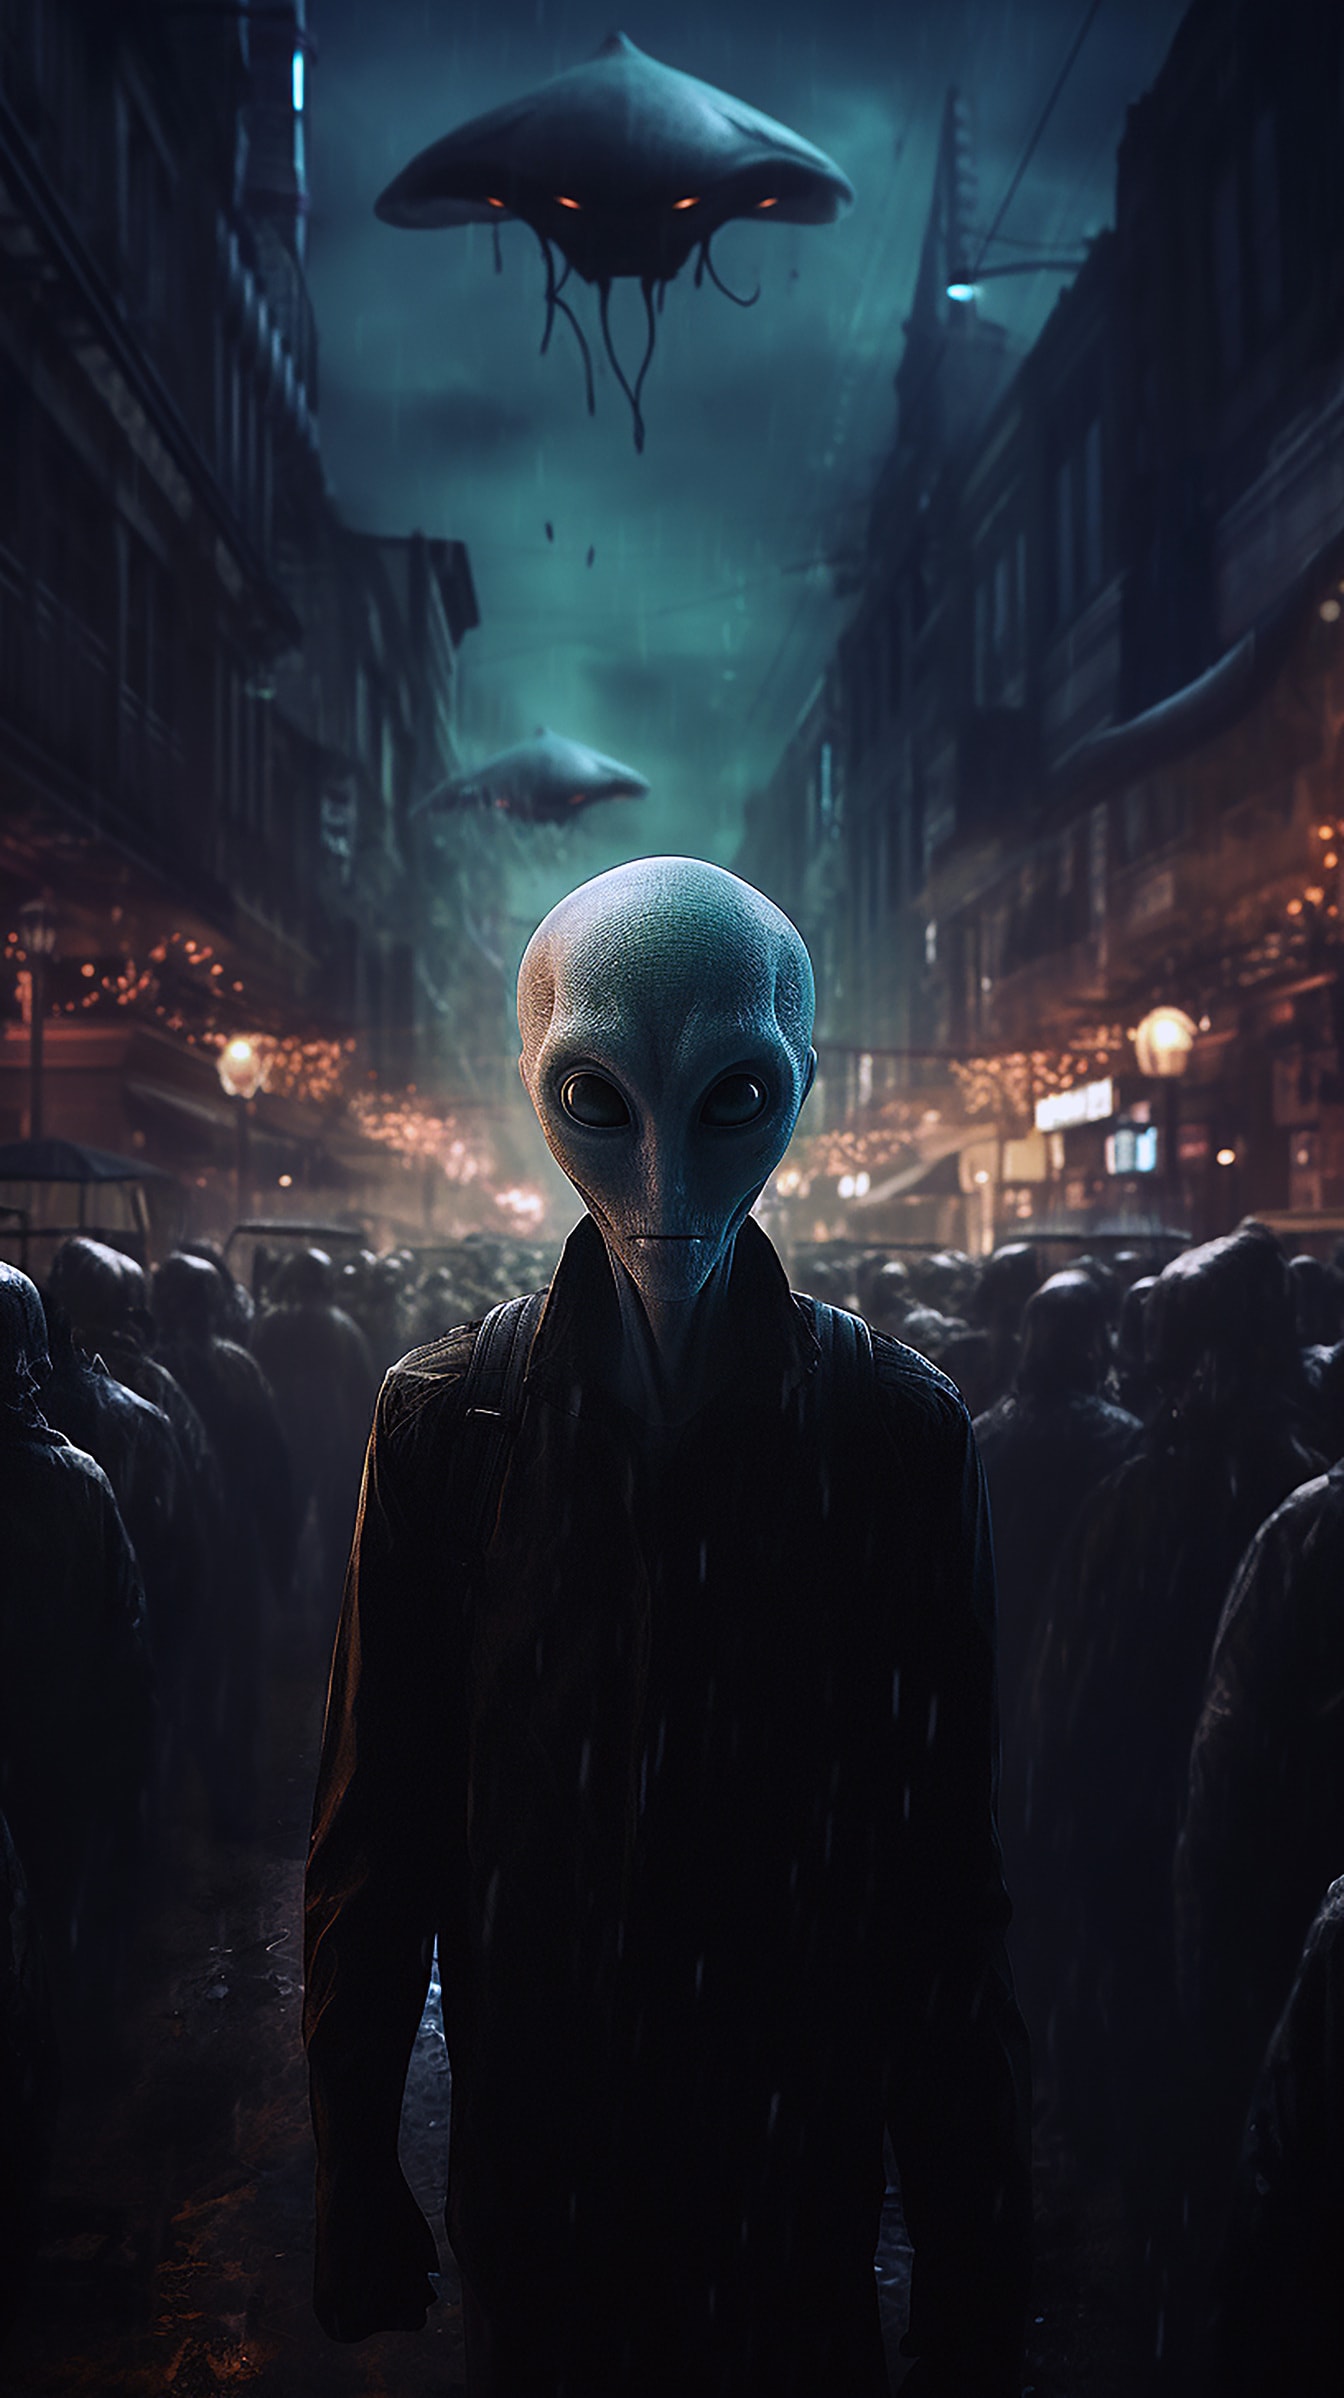 Alieno umanoide in strada di notte illustrazione horror fantasy